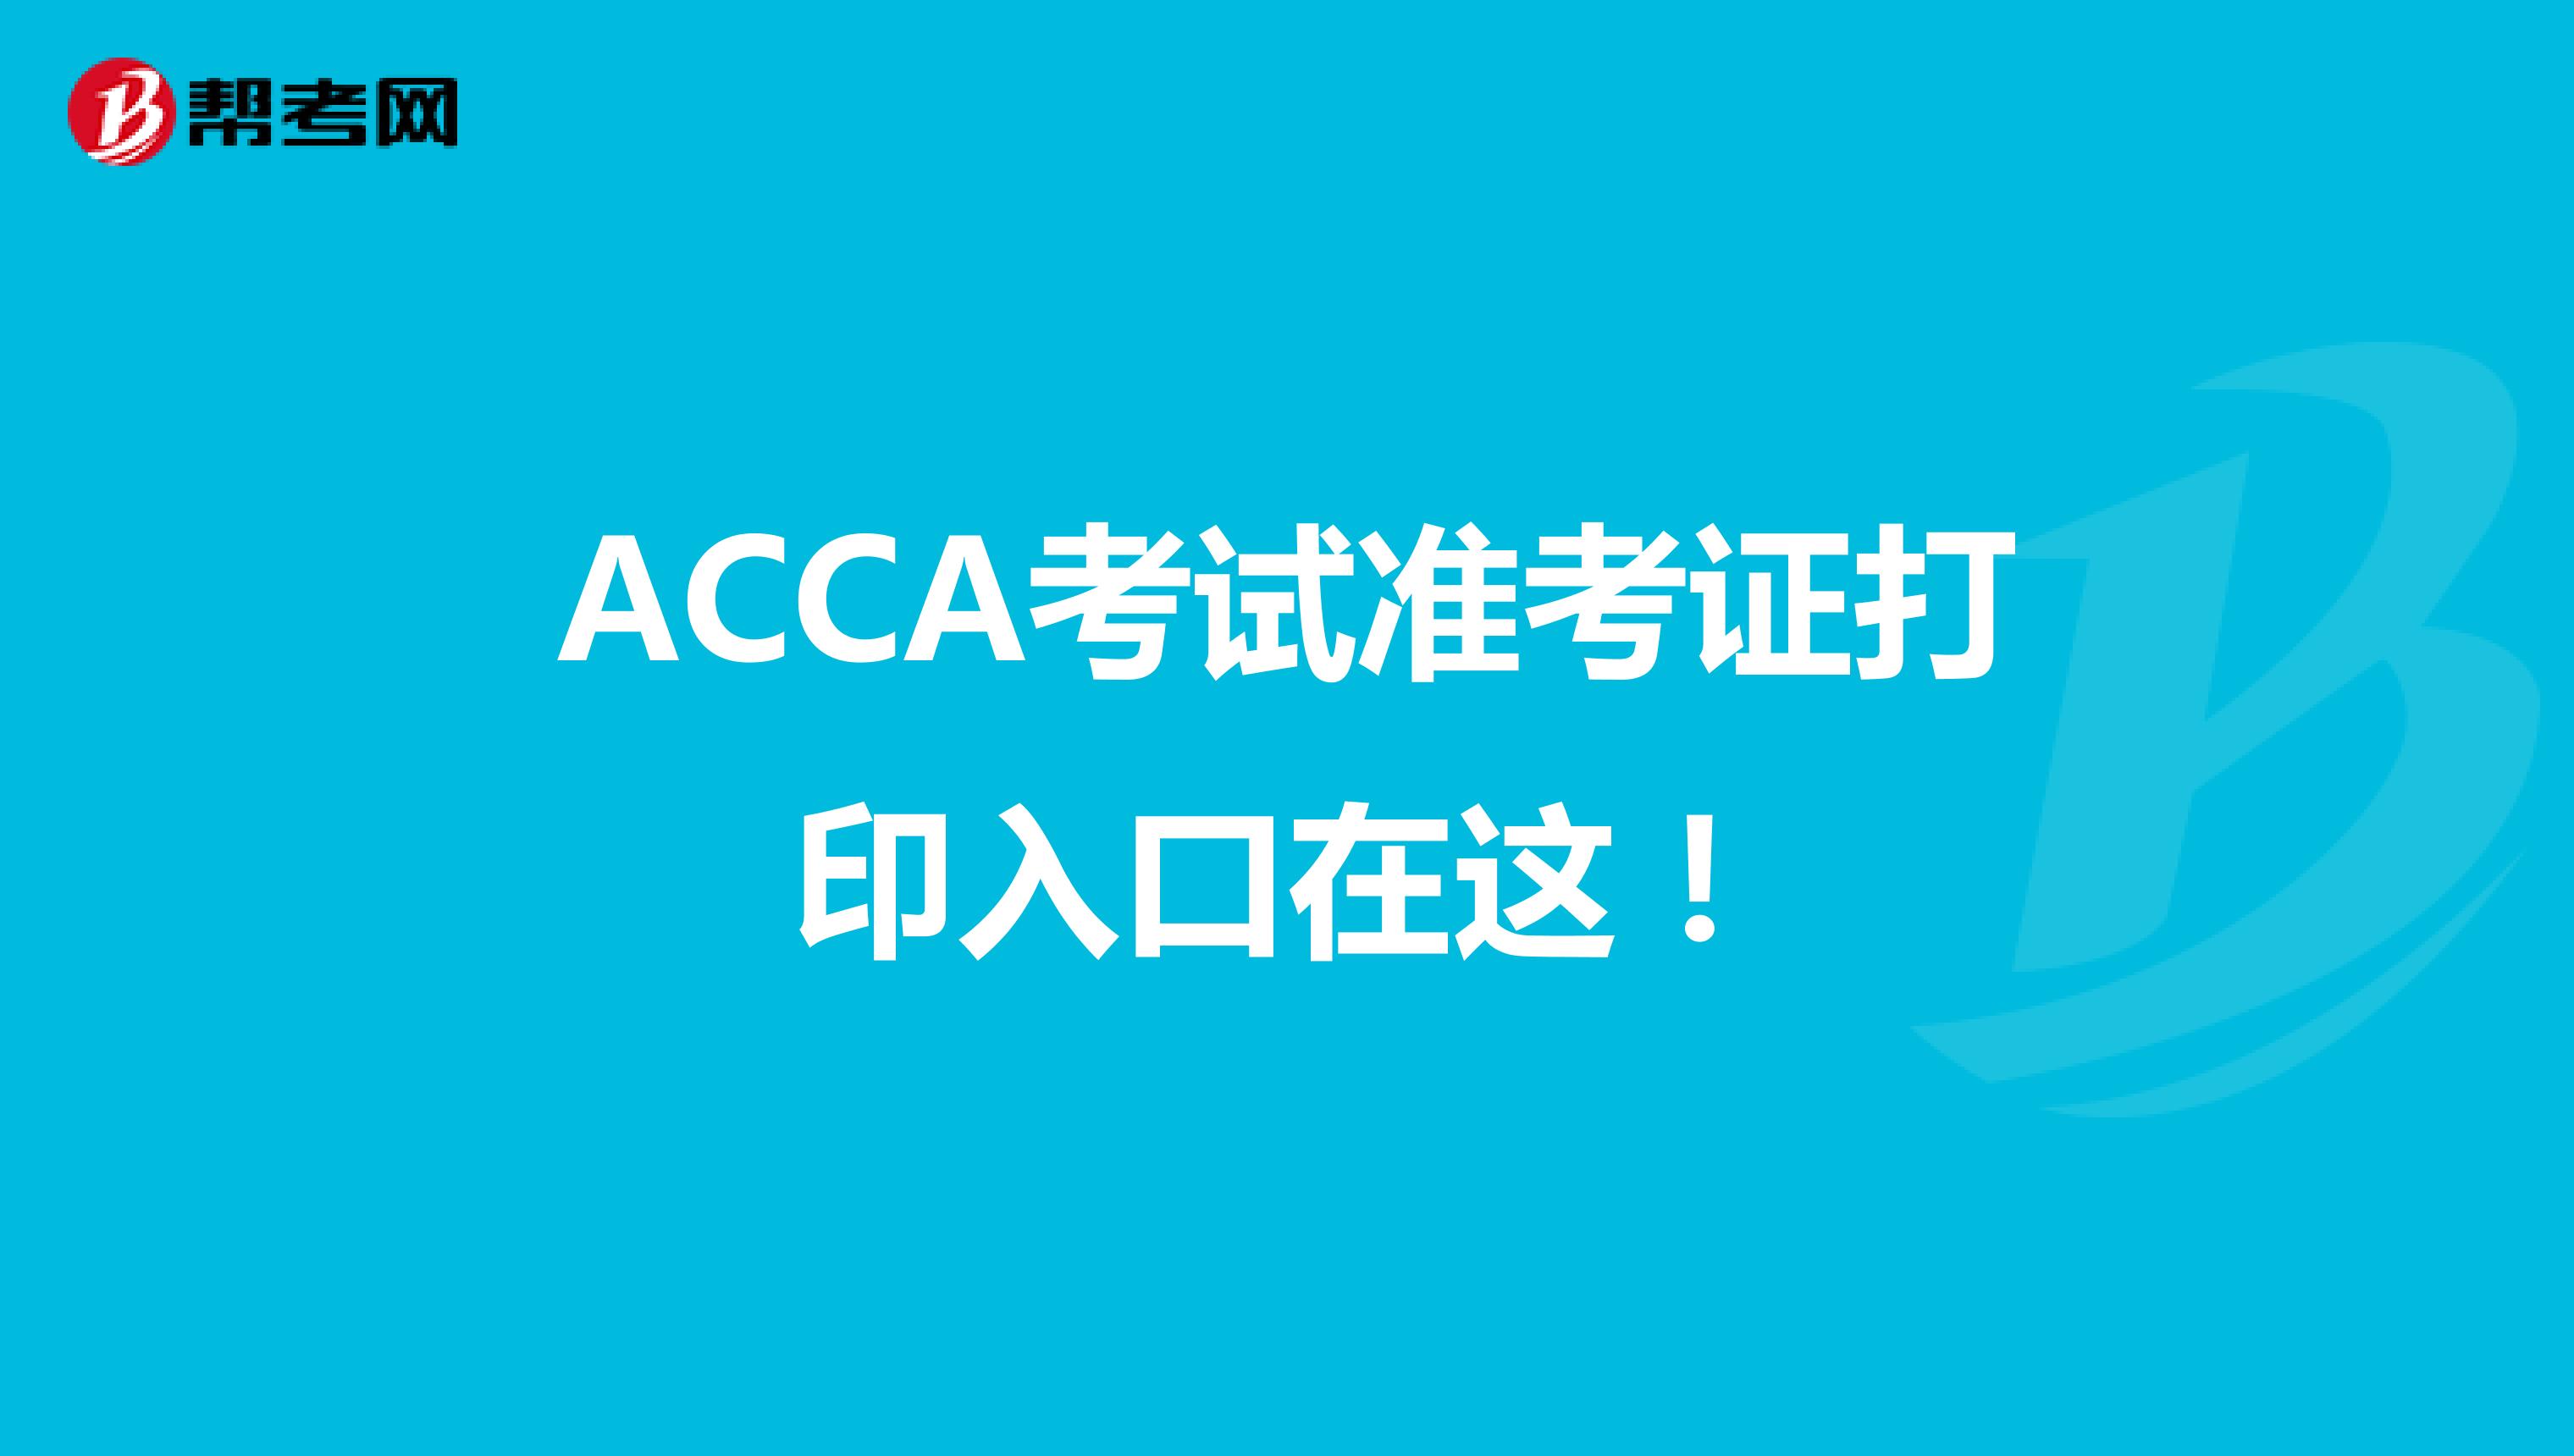 ACCA考试准考证打印入口在这！